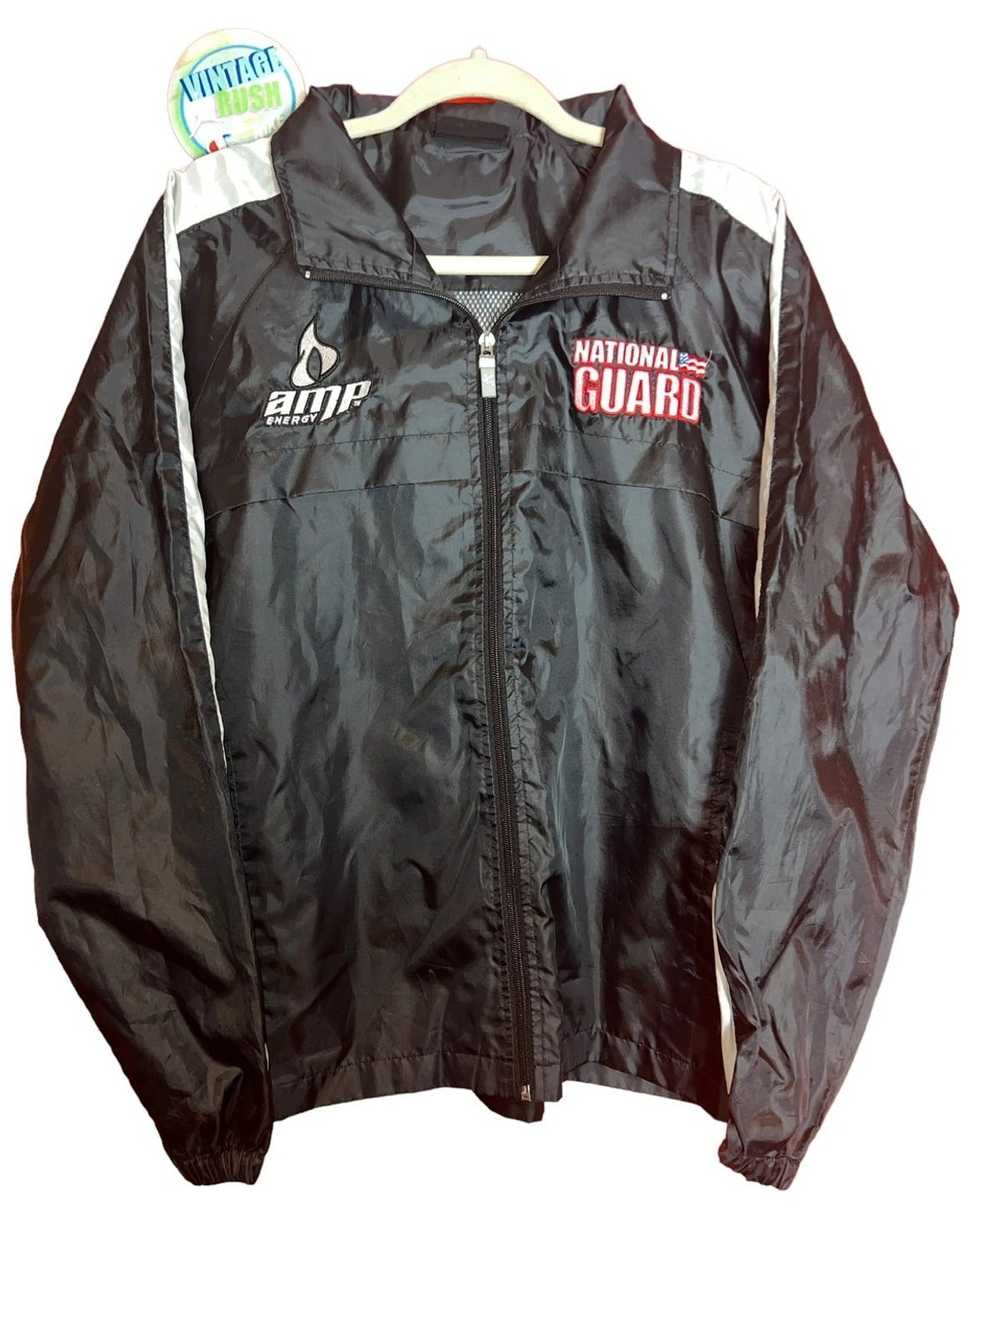 NASCAR National gaurd amp nascar racing jacket - image 1